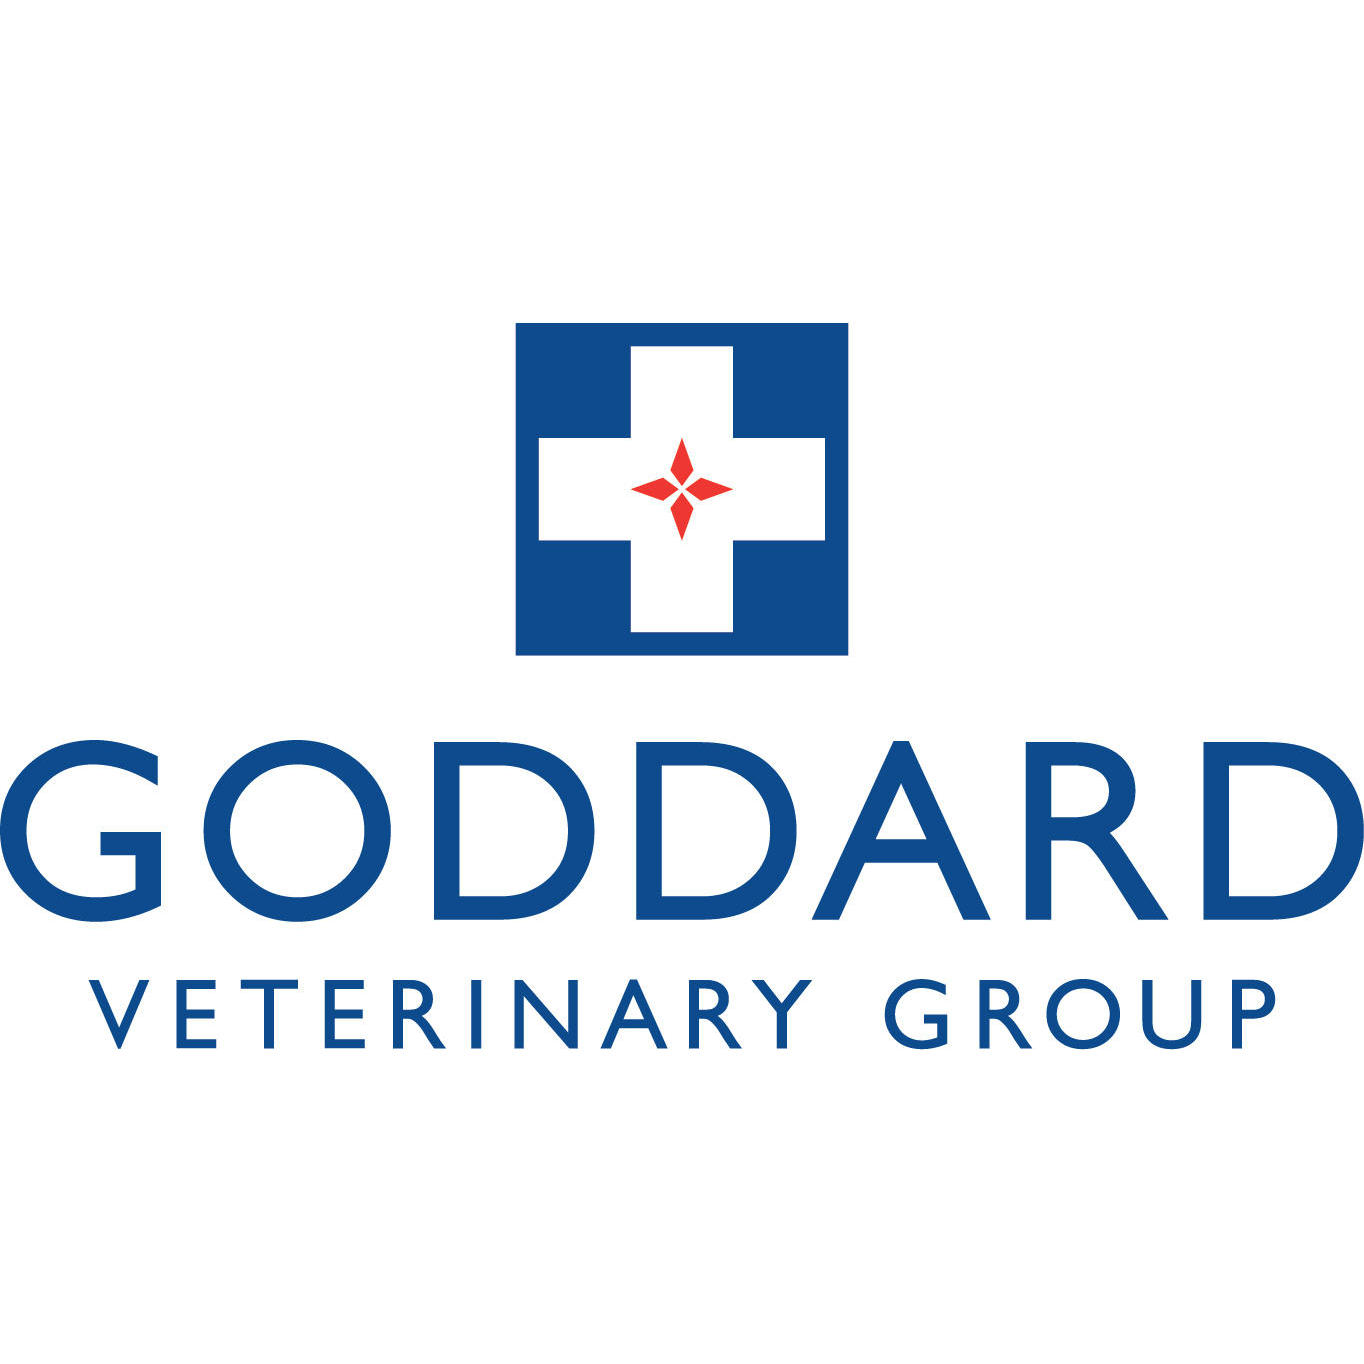 Goddard Veterinary Group, Harrow Weald - Harrow, London HA3 6HF - 020 8427 1611 | ShowMeLocal.com